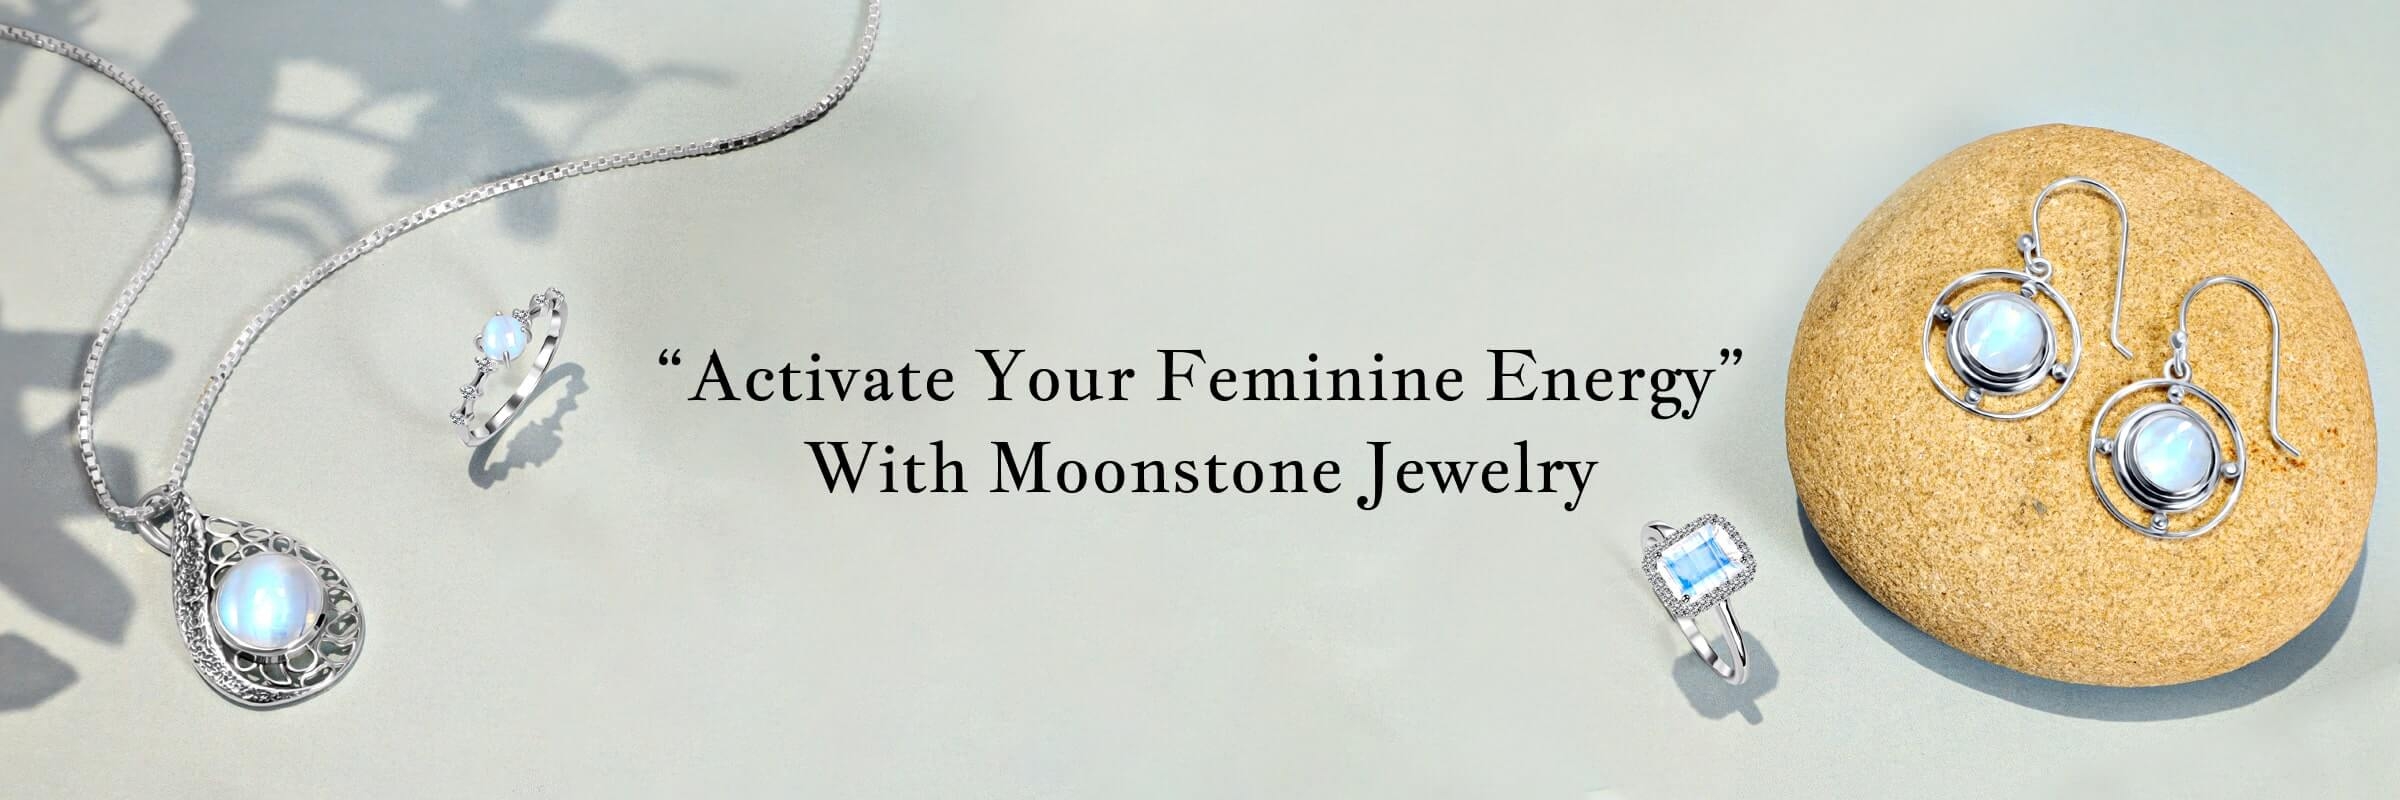 Moonstone Uses